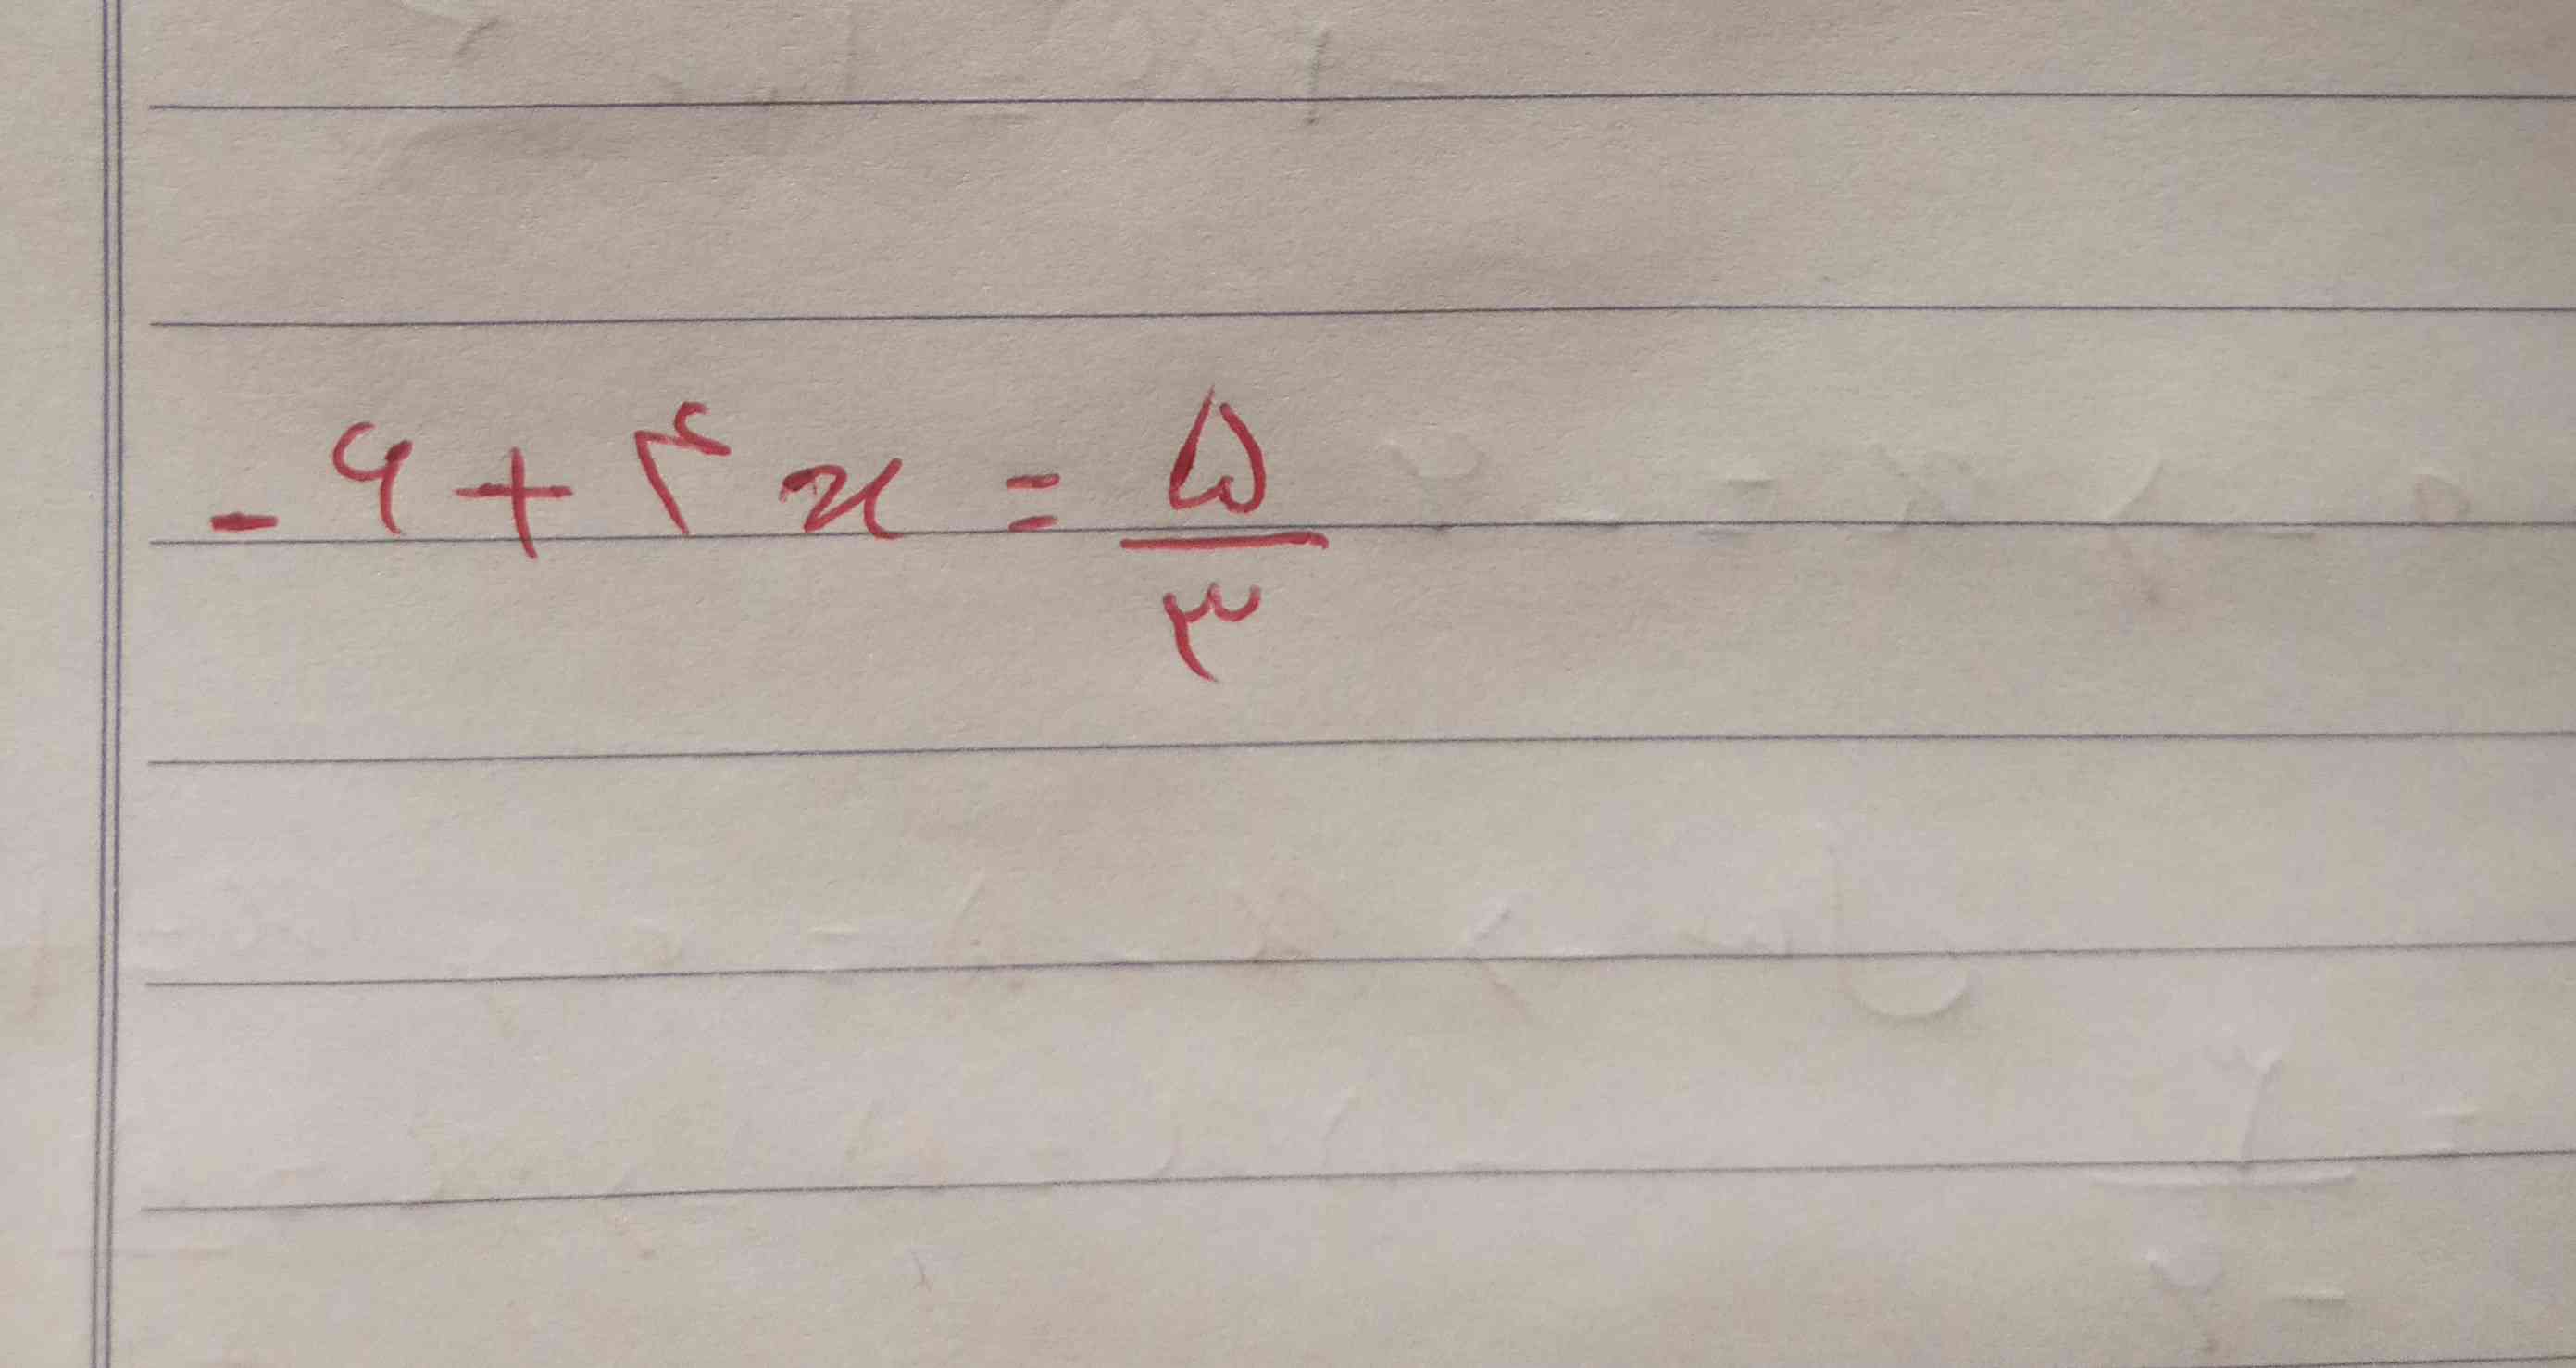 ببخشید جوال این معادله رو توضیح میدید برام